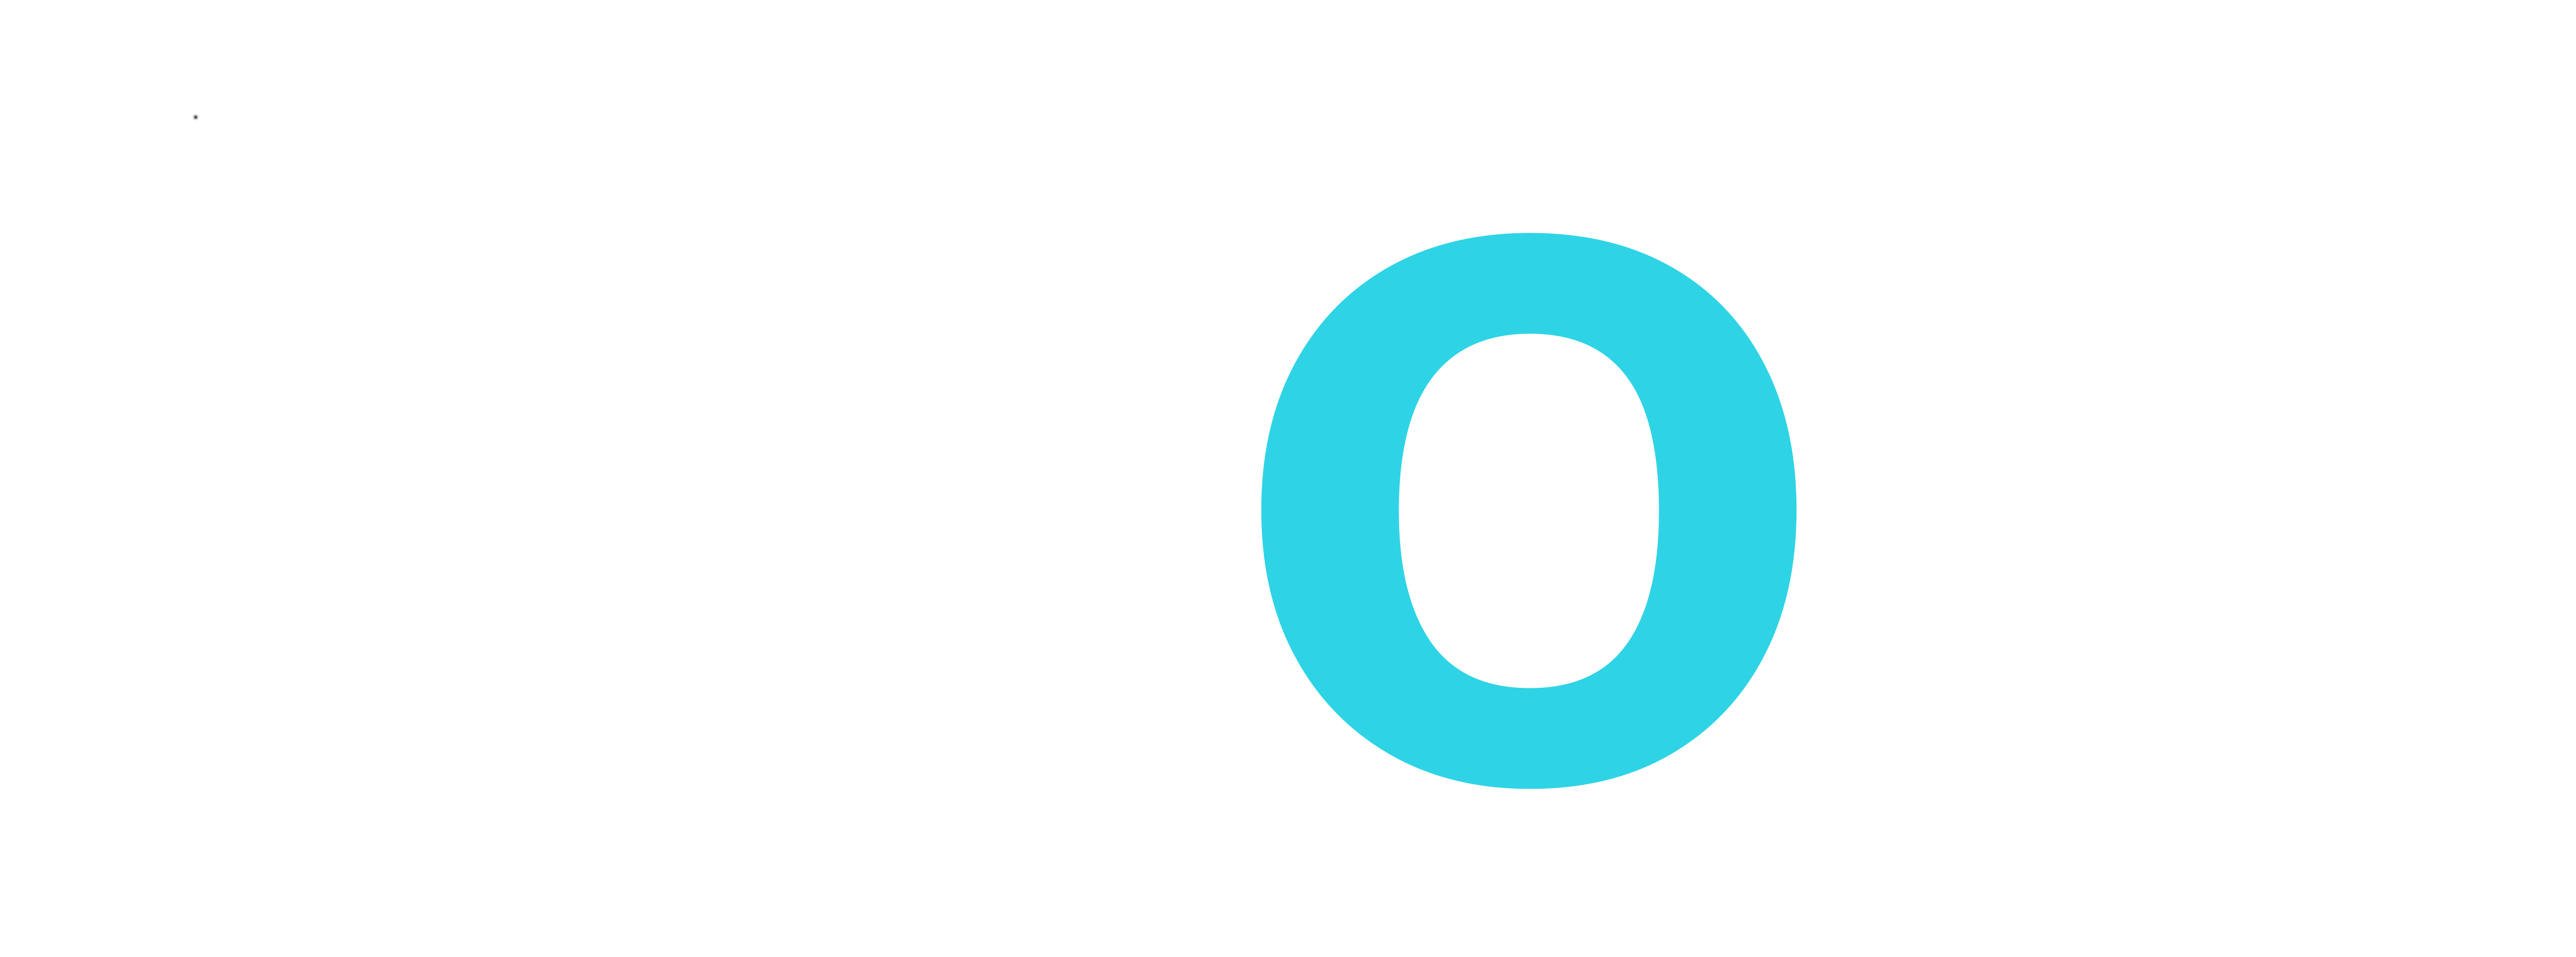 bpoz-white-blue-dot